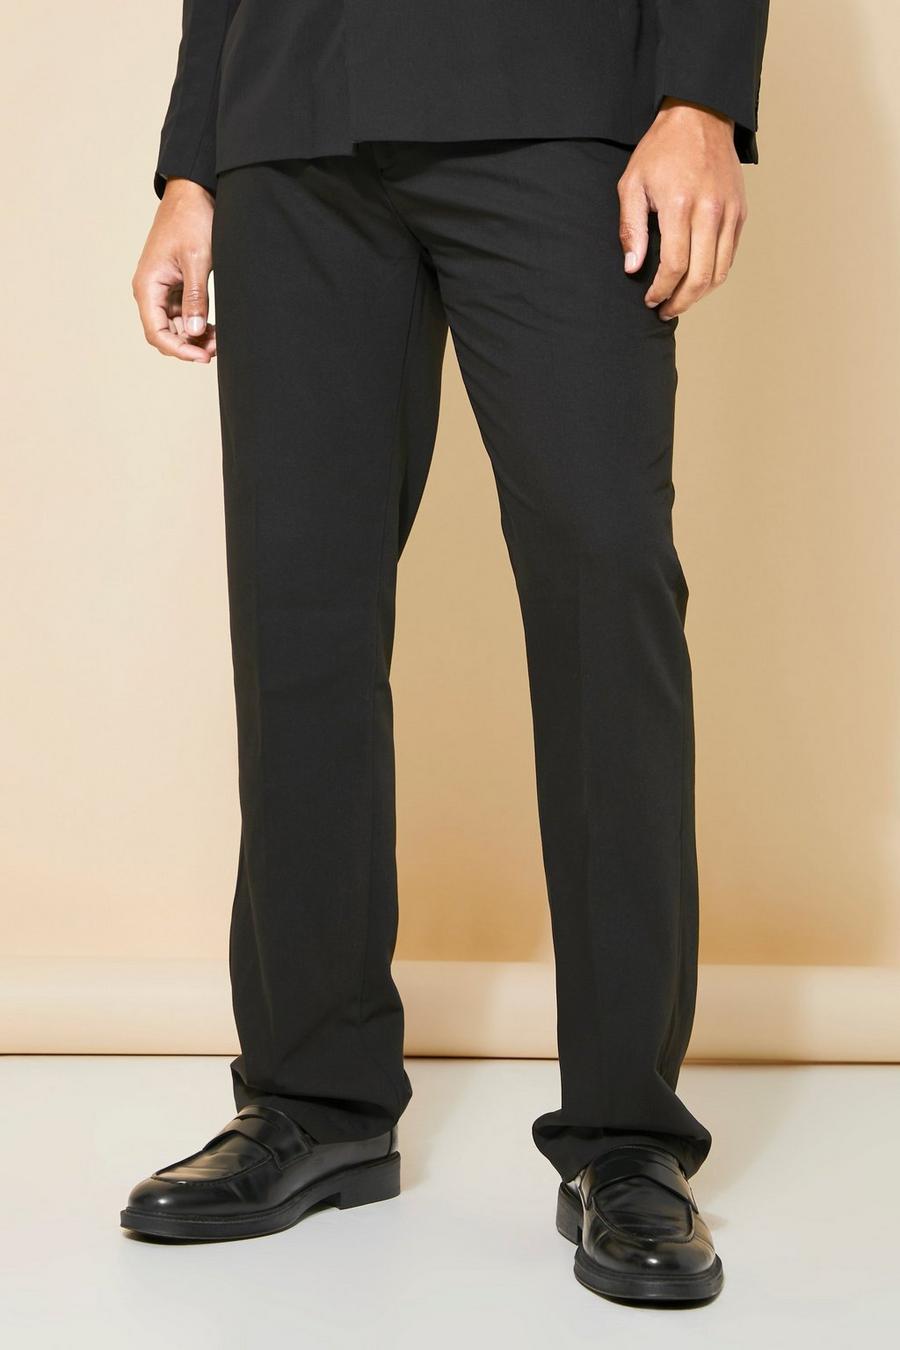 שחור black מכנסי חליפה בגזרת רגל ישרה עם עיטור מתכת